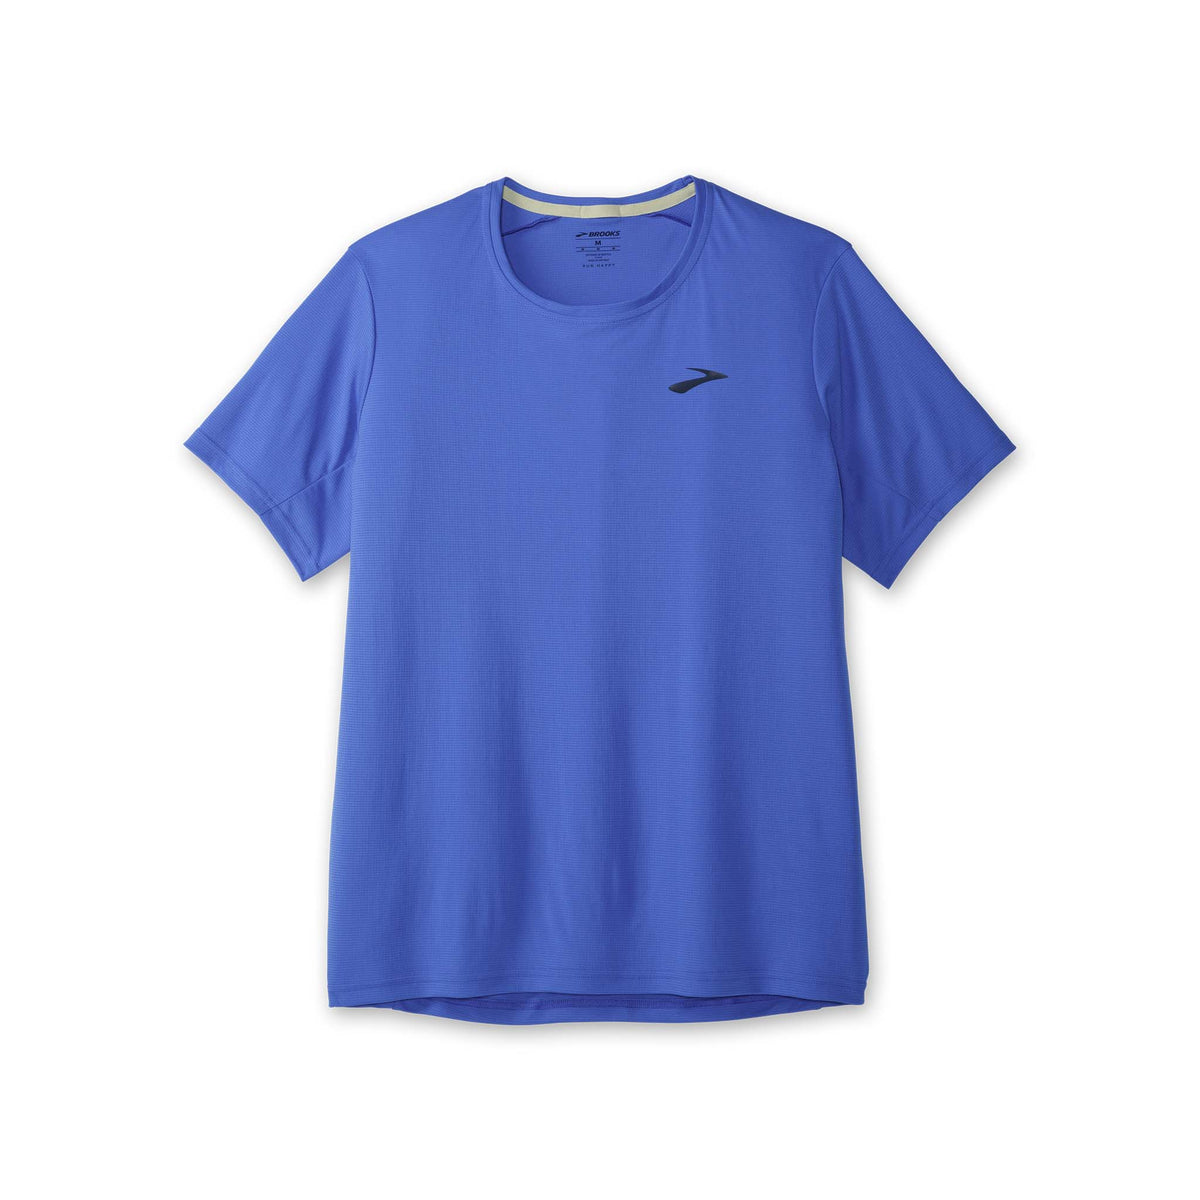 Brooks Atmosphere T-shirt de course à pied Bluetiful homme